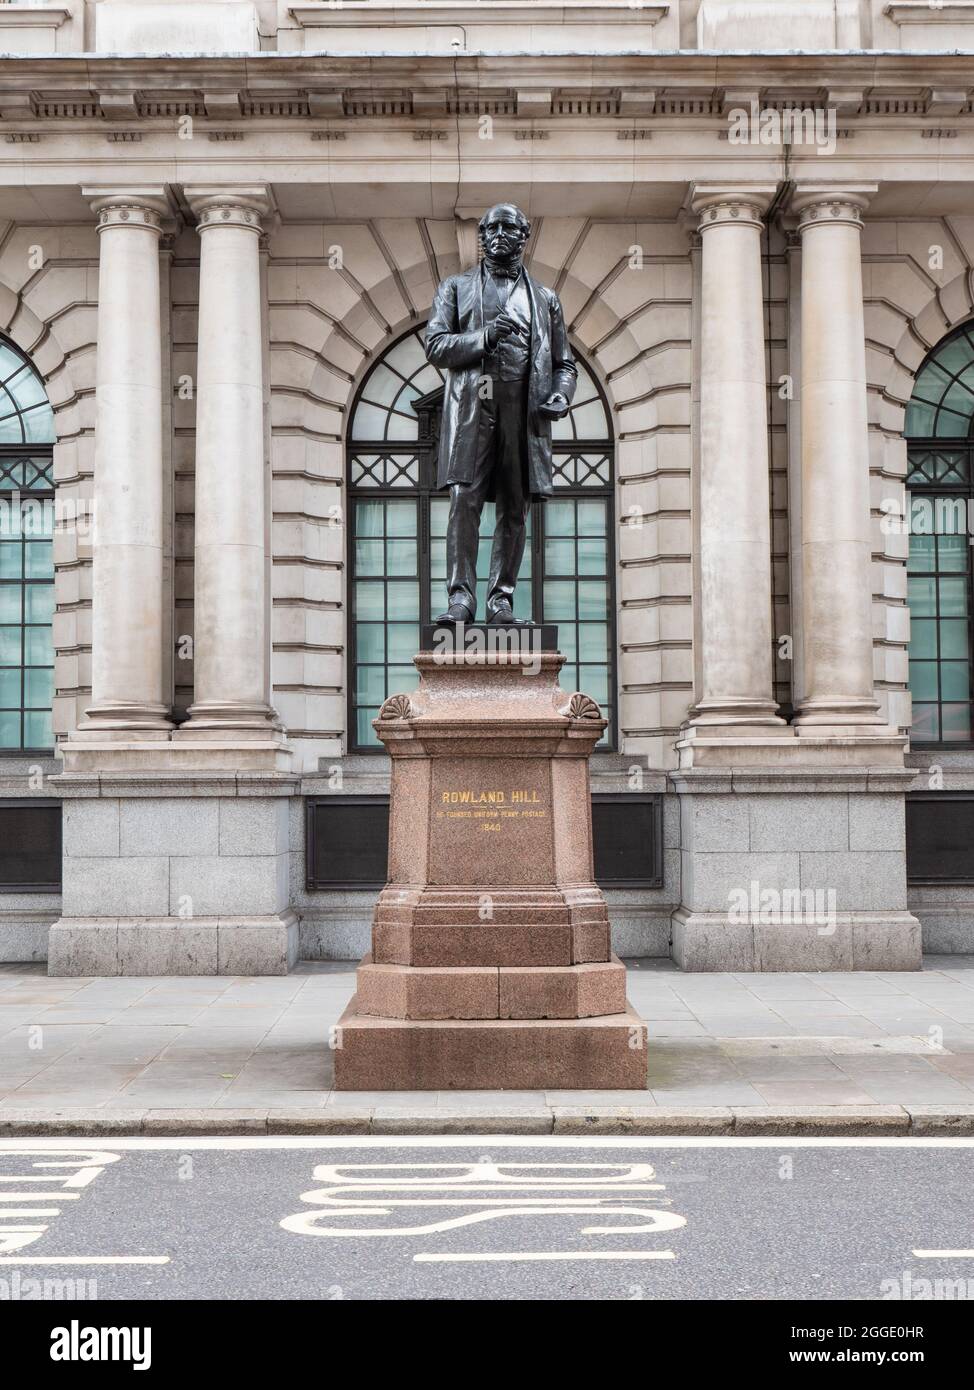 Estatua de Rowland Hill, Londres. Un homenaje al reformador social británico que ideó el sistema postal del Reino Unido basado en el concepto de franqueo pagado. Foto de stock